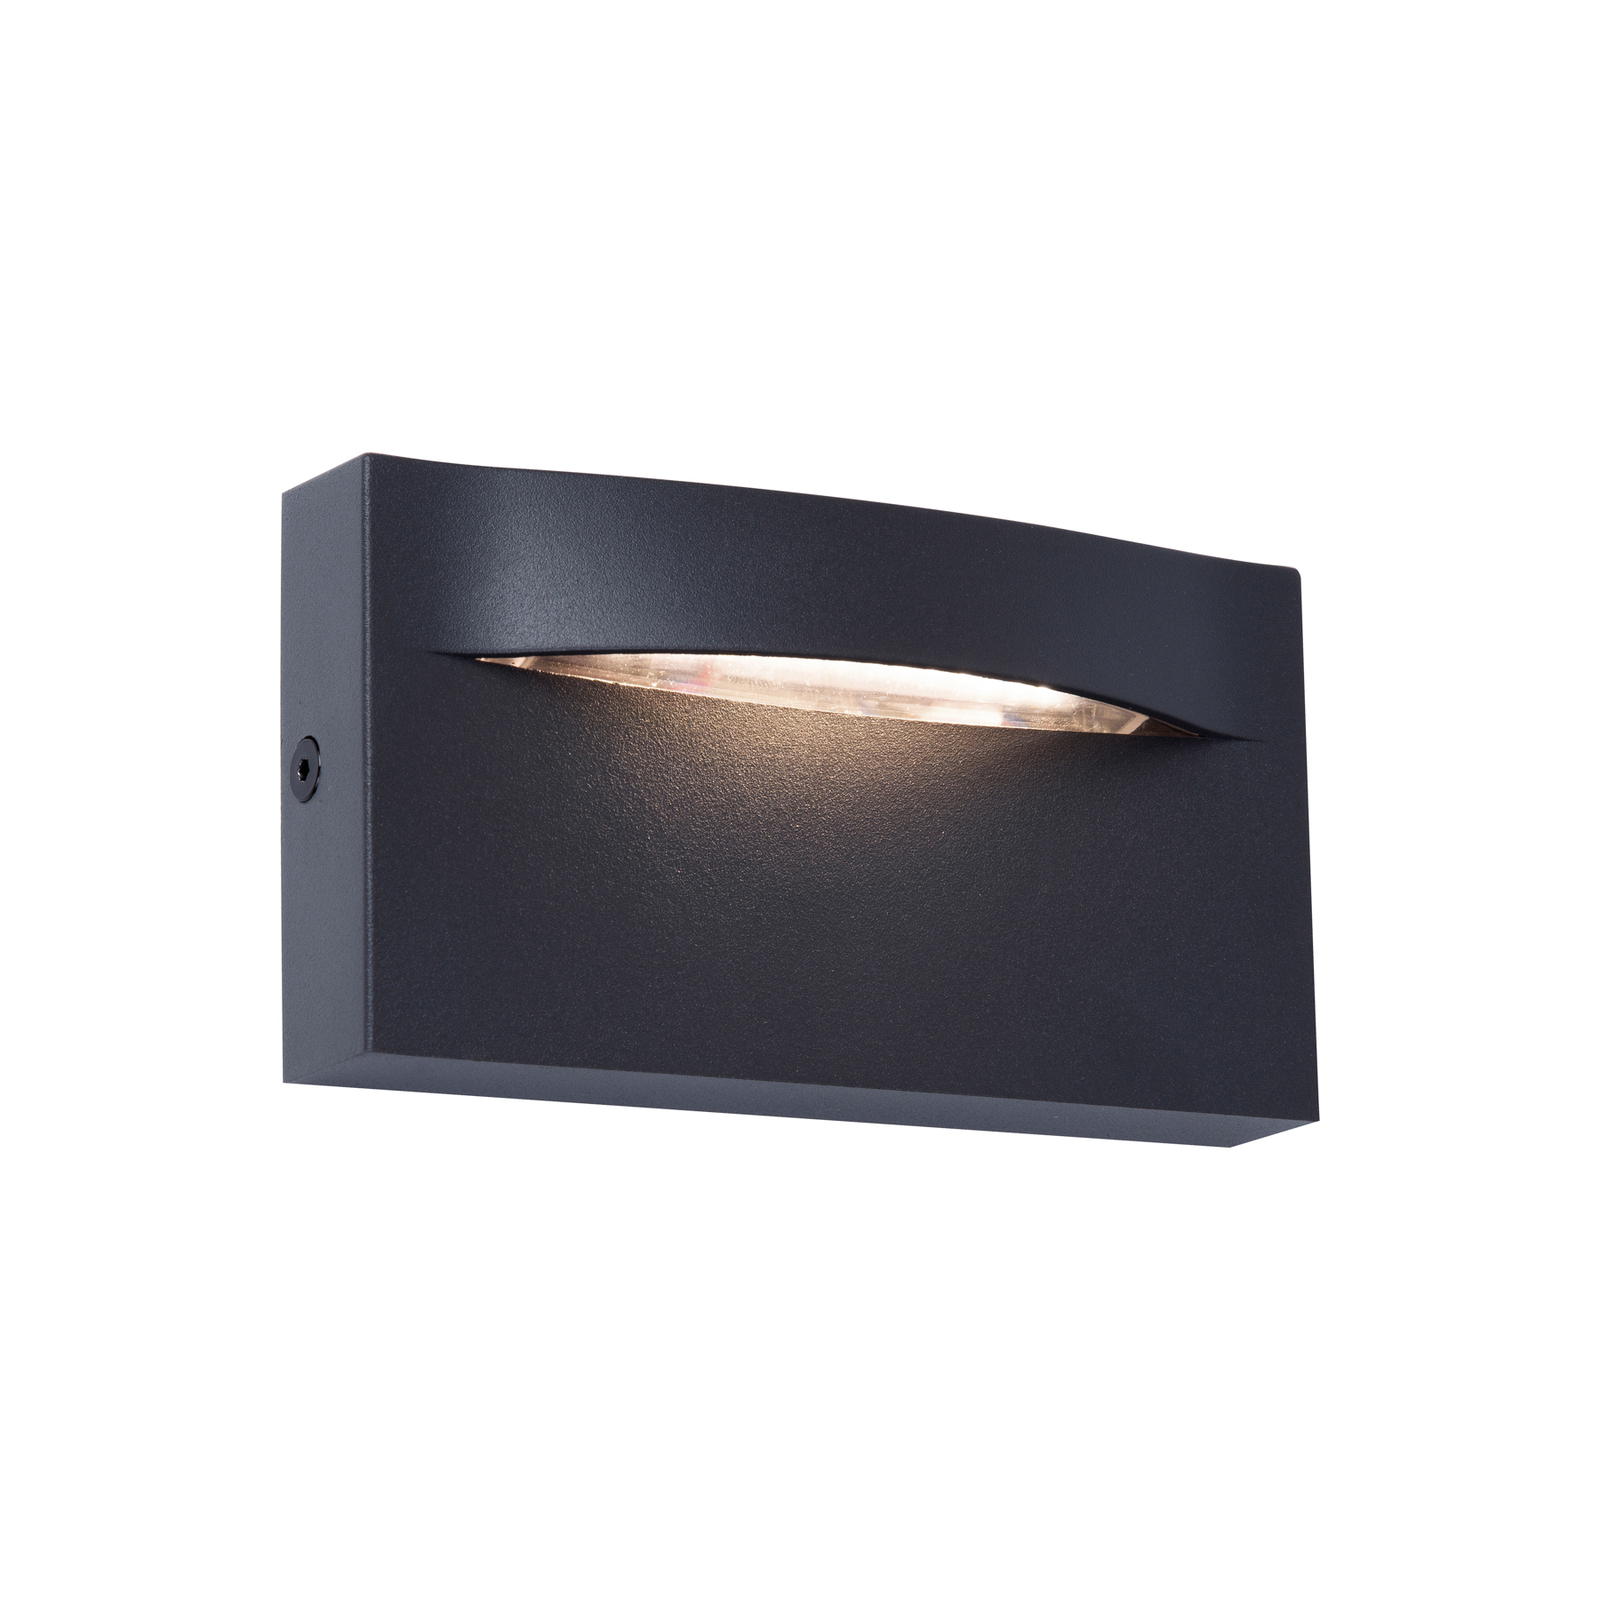 LED lauko sieninis šviestuvas "Vita", tamsiai pilkos spalvos, 13,7 x 7,5 cm